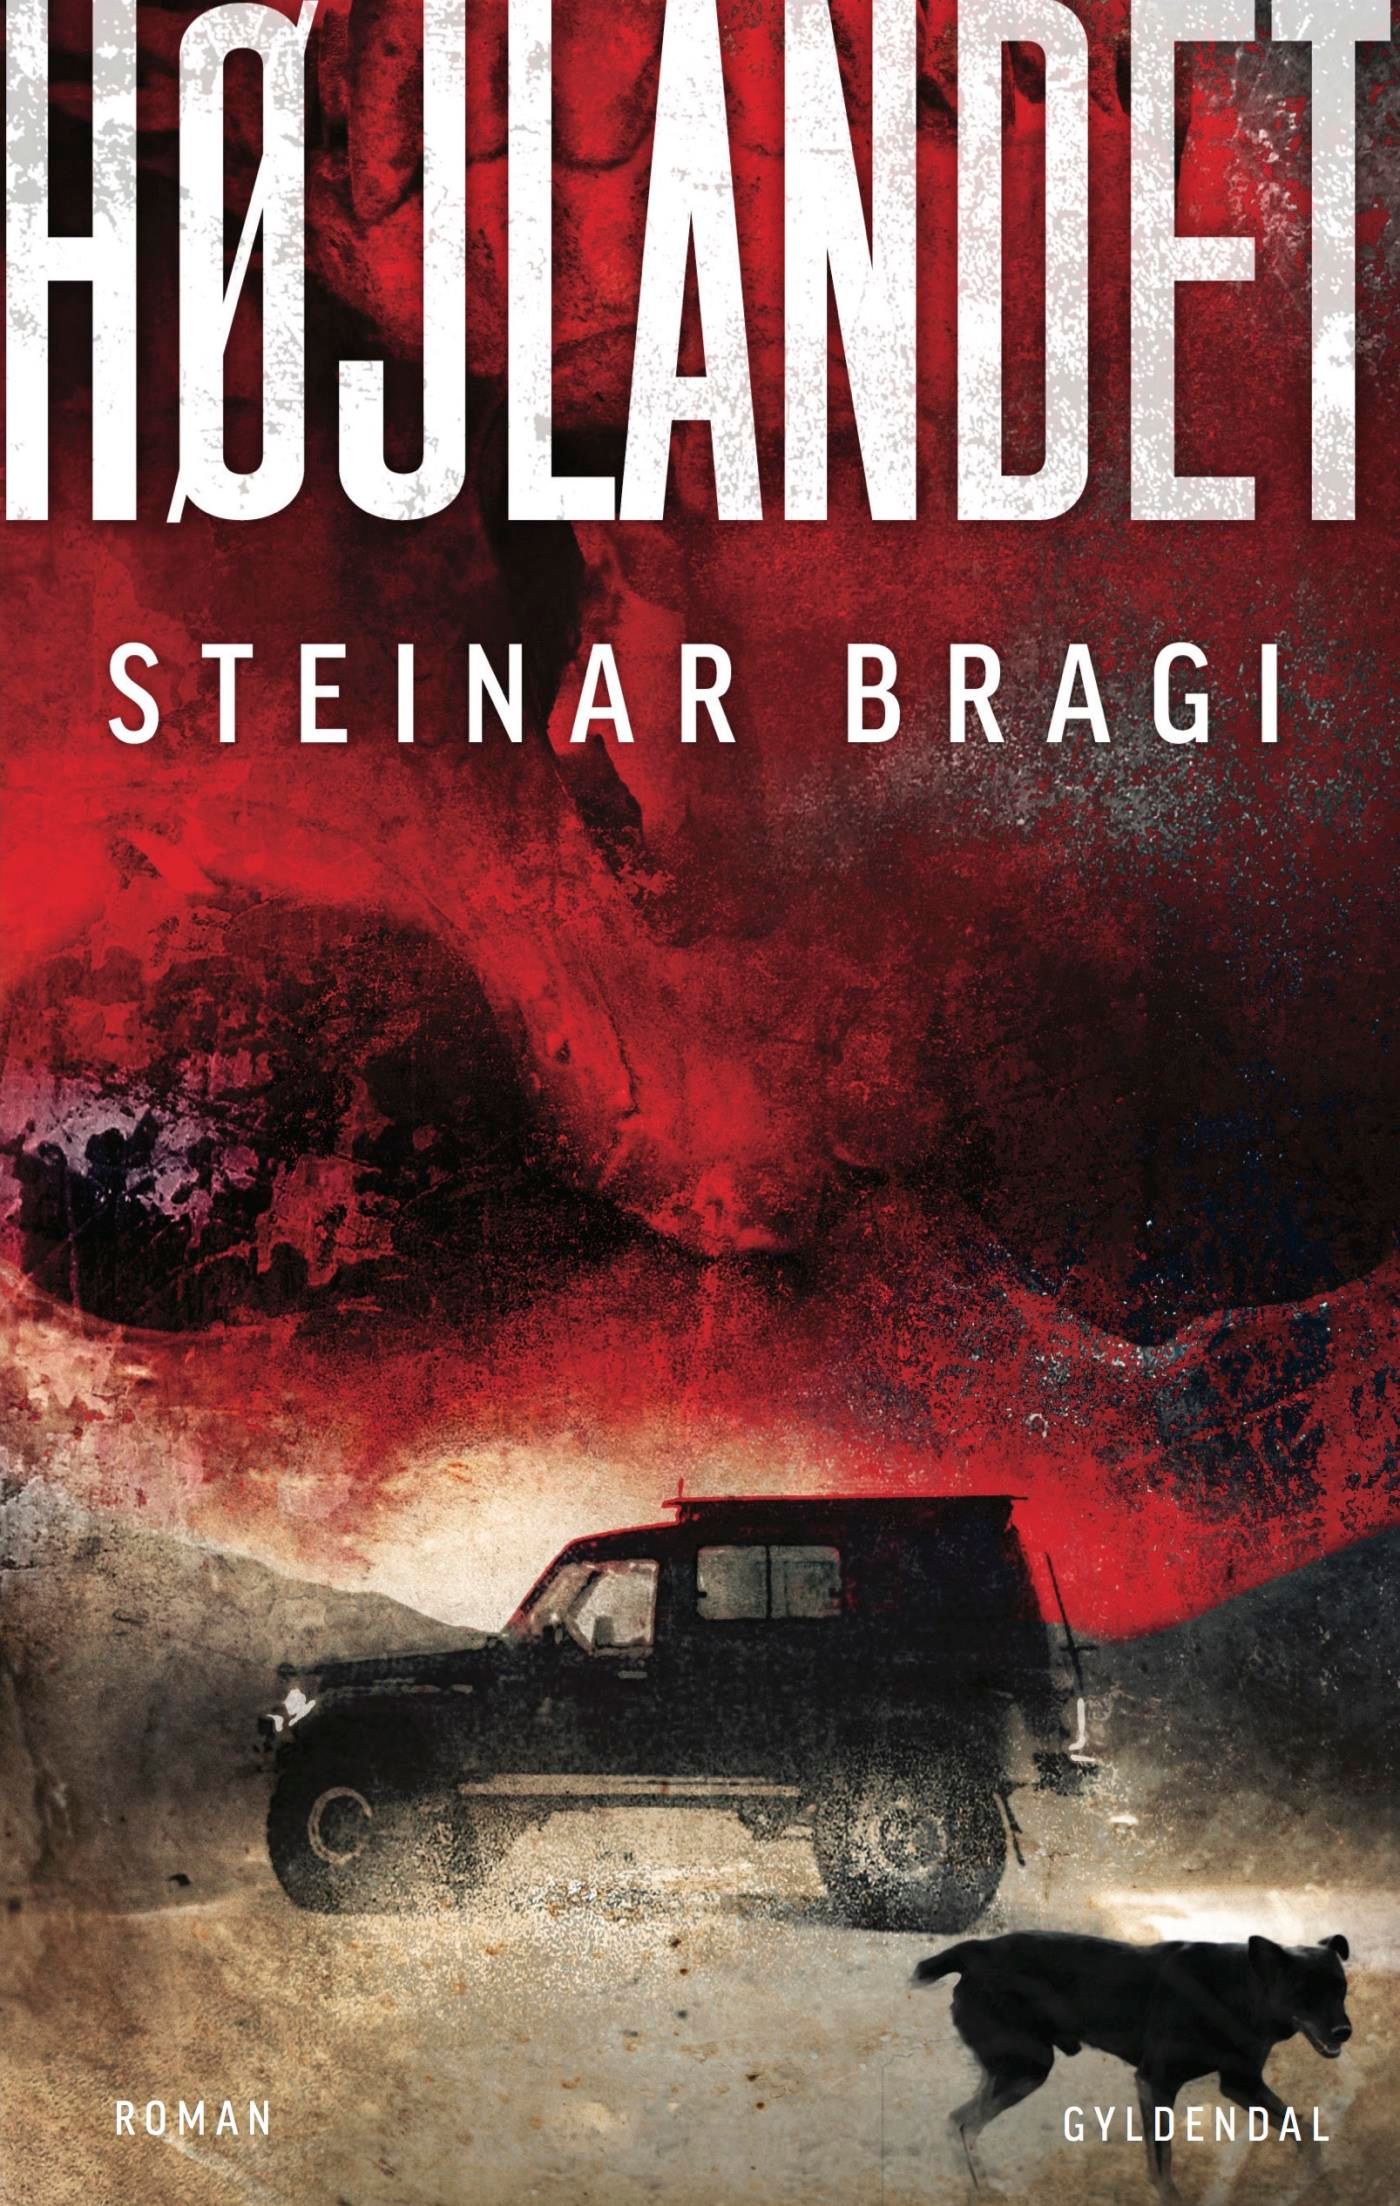 Højlandet, eBook by Steinar Bragi